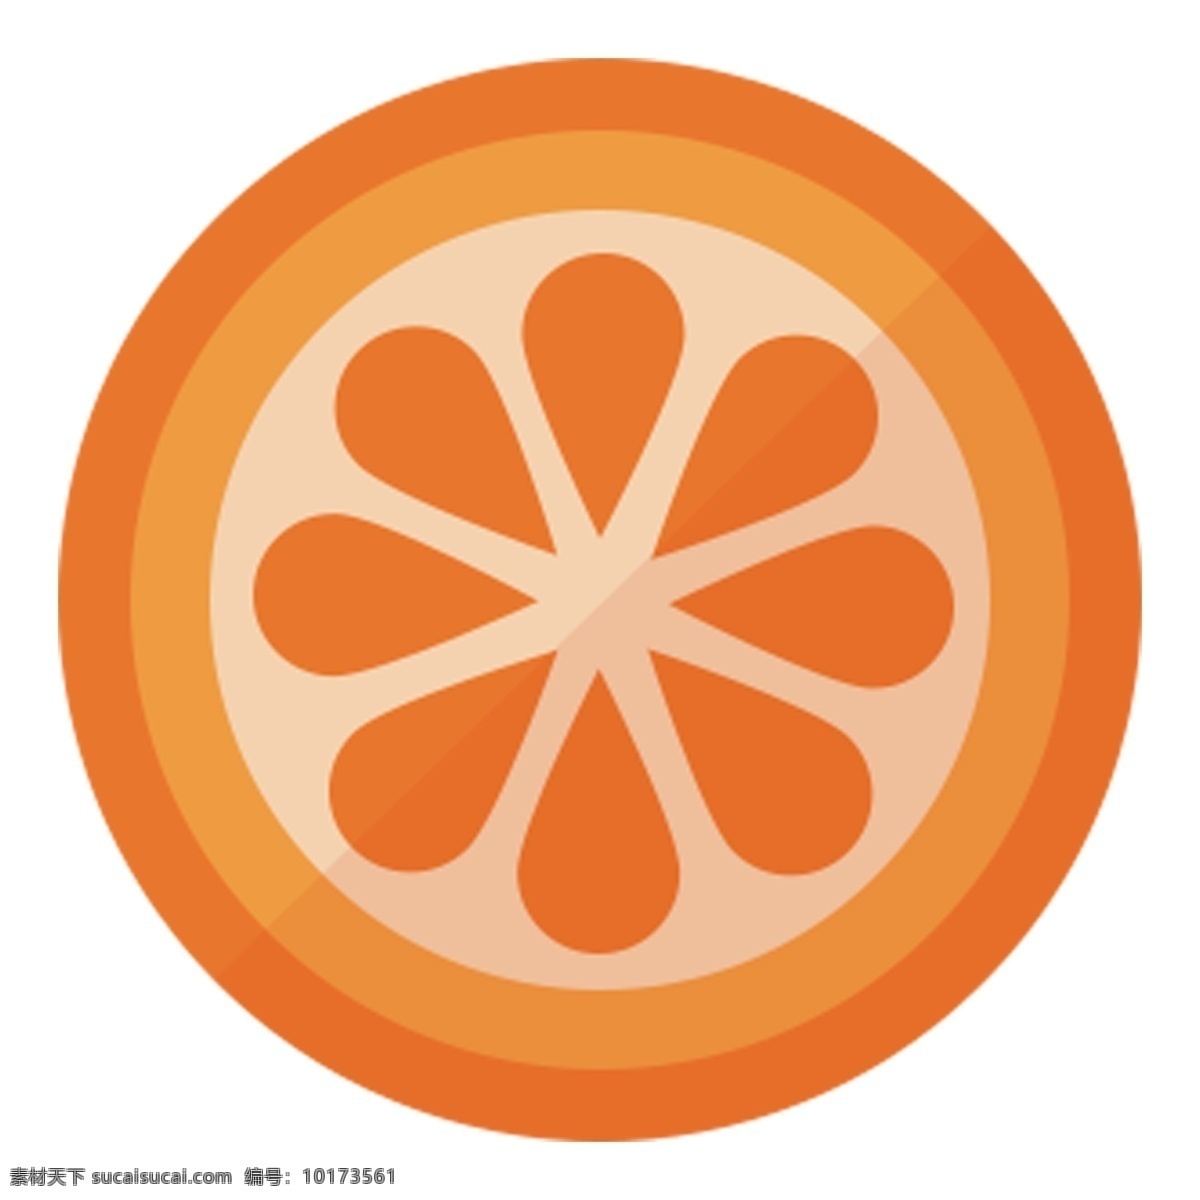 半 卡通 橙子 新鲜橙子 卡通橙子 手绘橙子 扁平化 橙色 水果 酸酸甜甜 橙子png 半个橙子